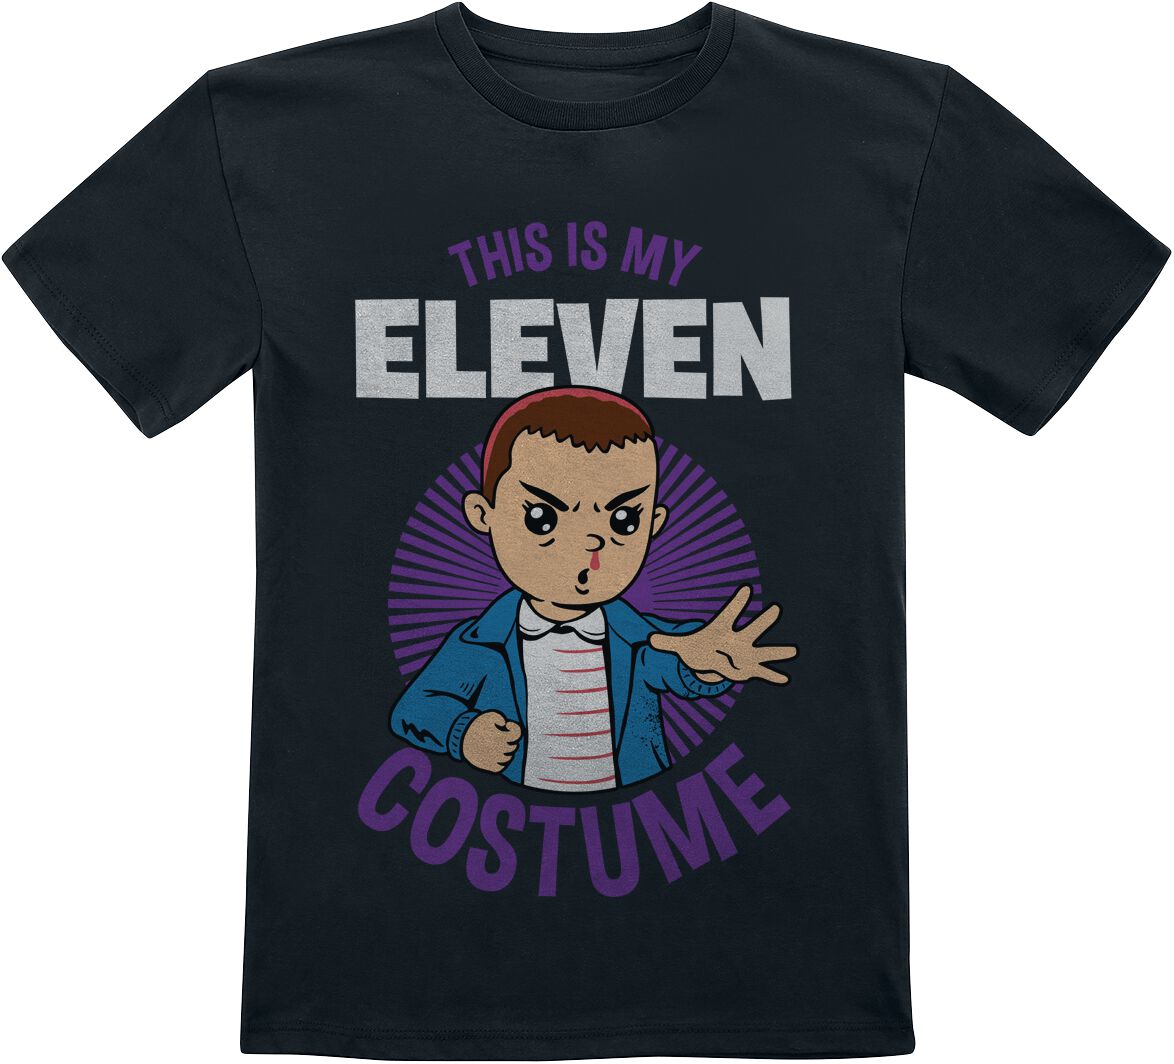 T-shirt de Stranger Things - Kids - This is my Eleven Costume - 104 à 116 - pour filles & garçonse -